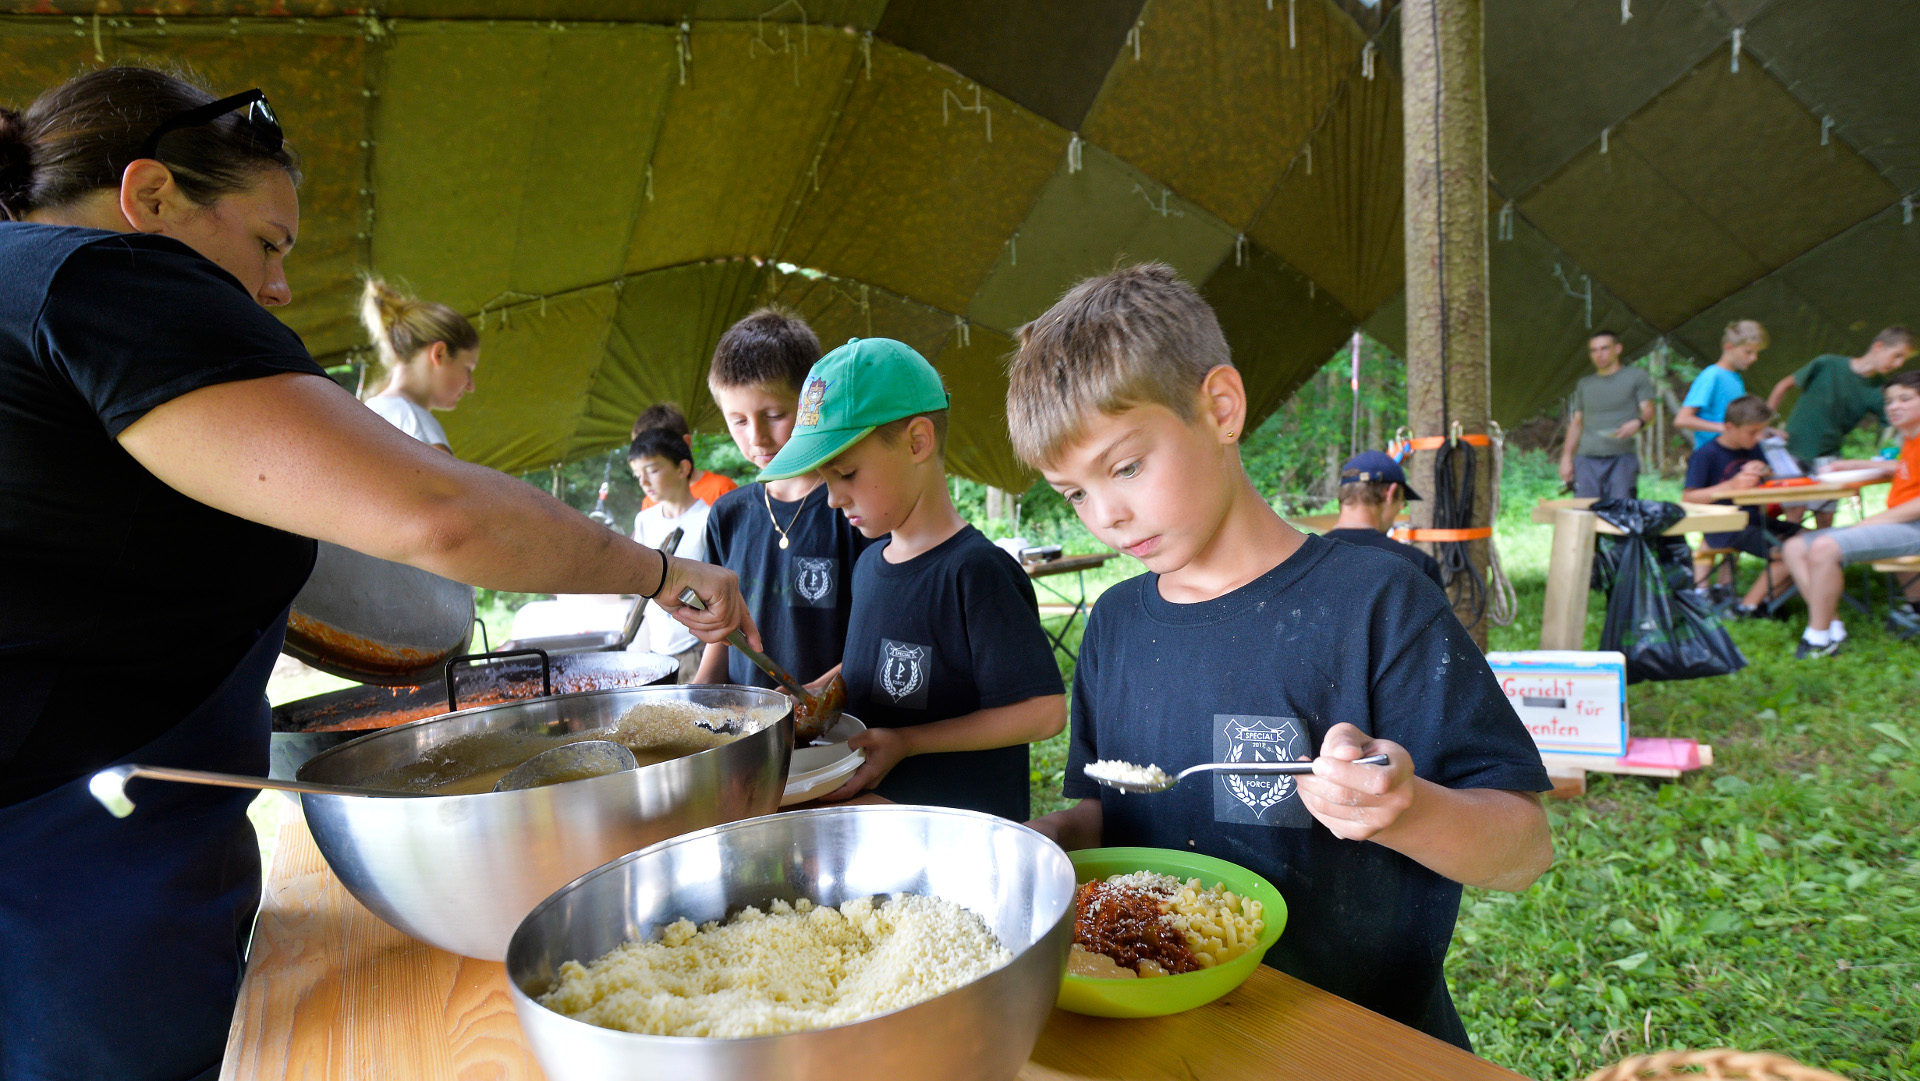 Jubla-Kinder schöpfen Essen unter dem  "Sarasani"-Zelt